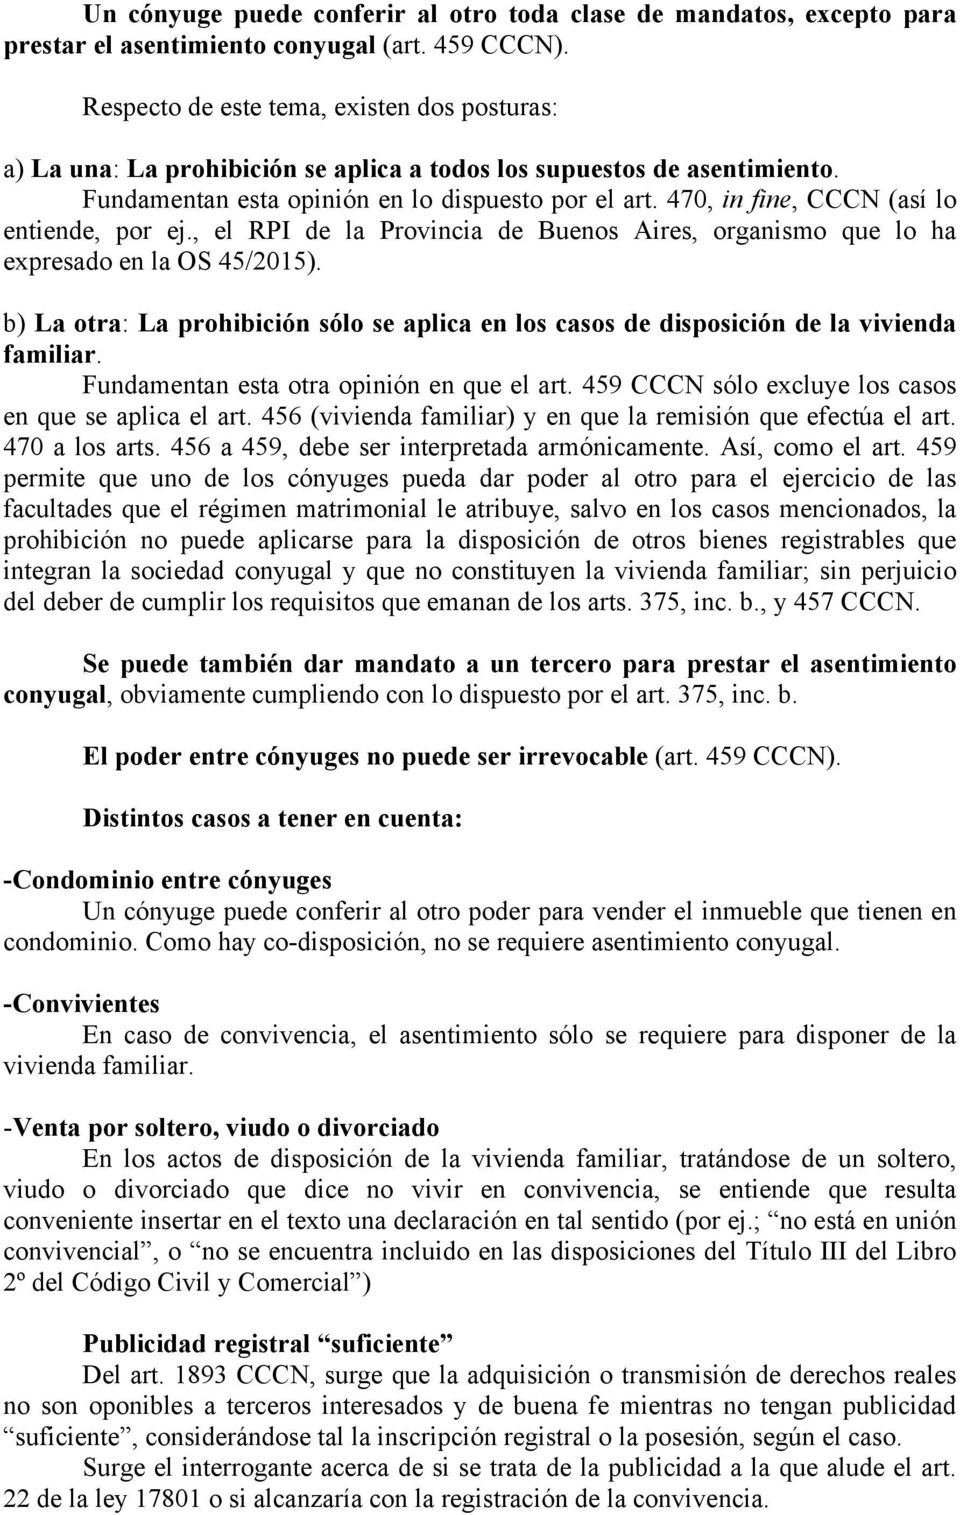 470, in fine, CCCN (así lo entiende, por ej., el RPI de la Provincia de Buenos Aires, organismo que lo ha expresado en la OS 45/2015).